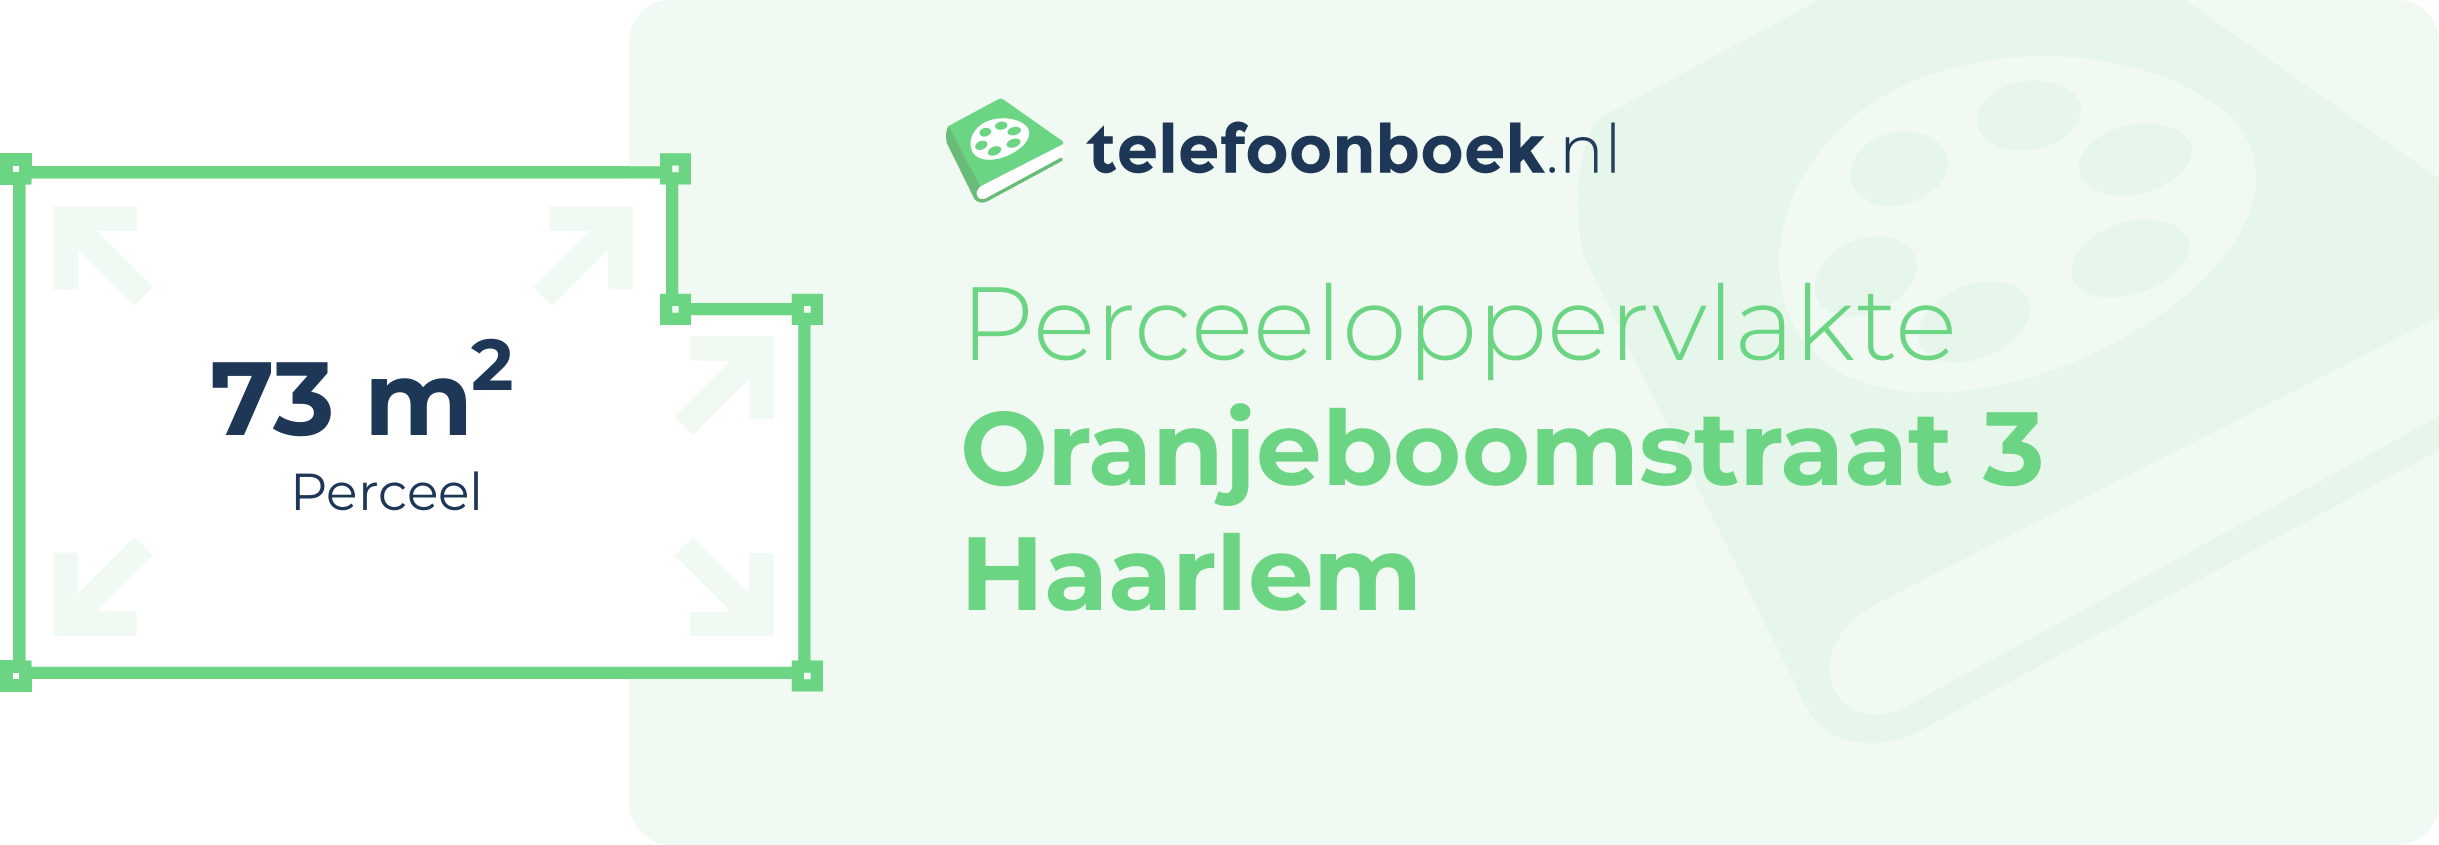 Perceeloppervlakte Oranjeboomstraat 3 Haarlem